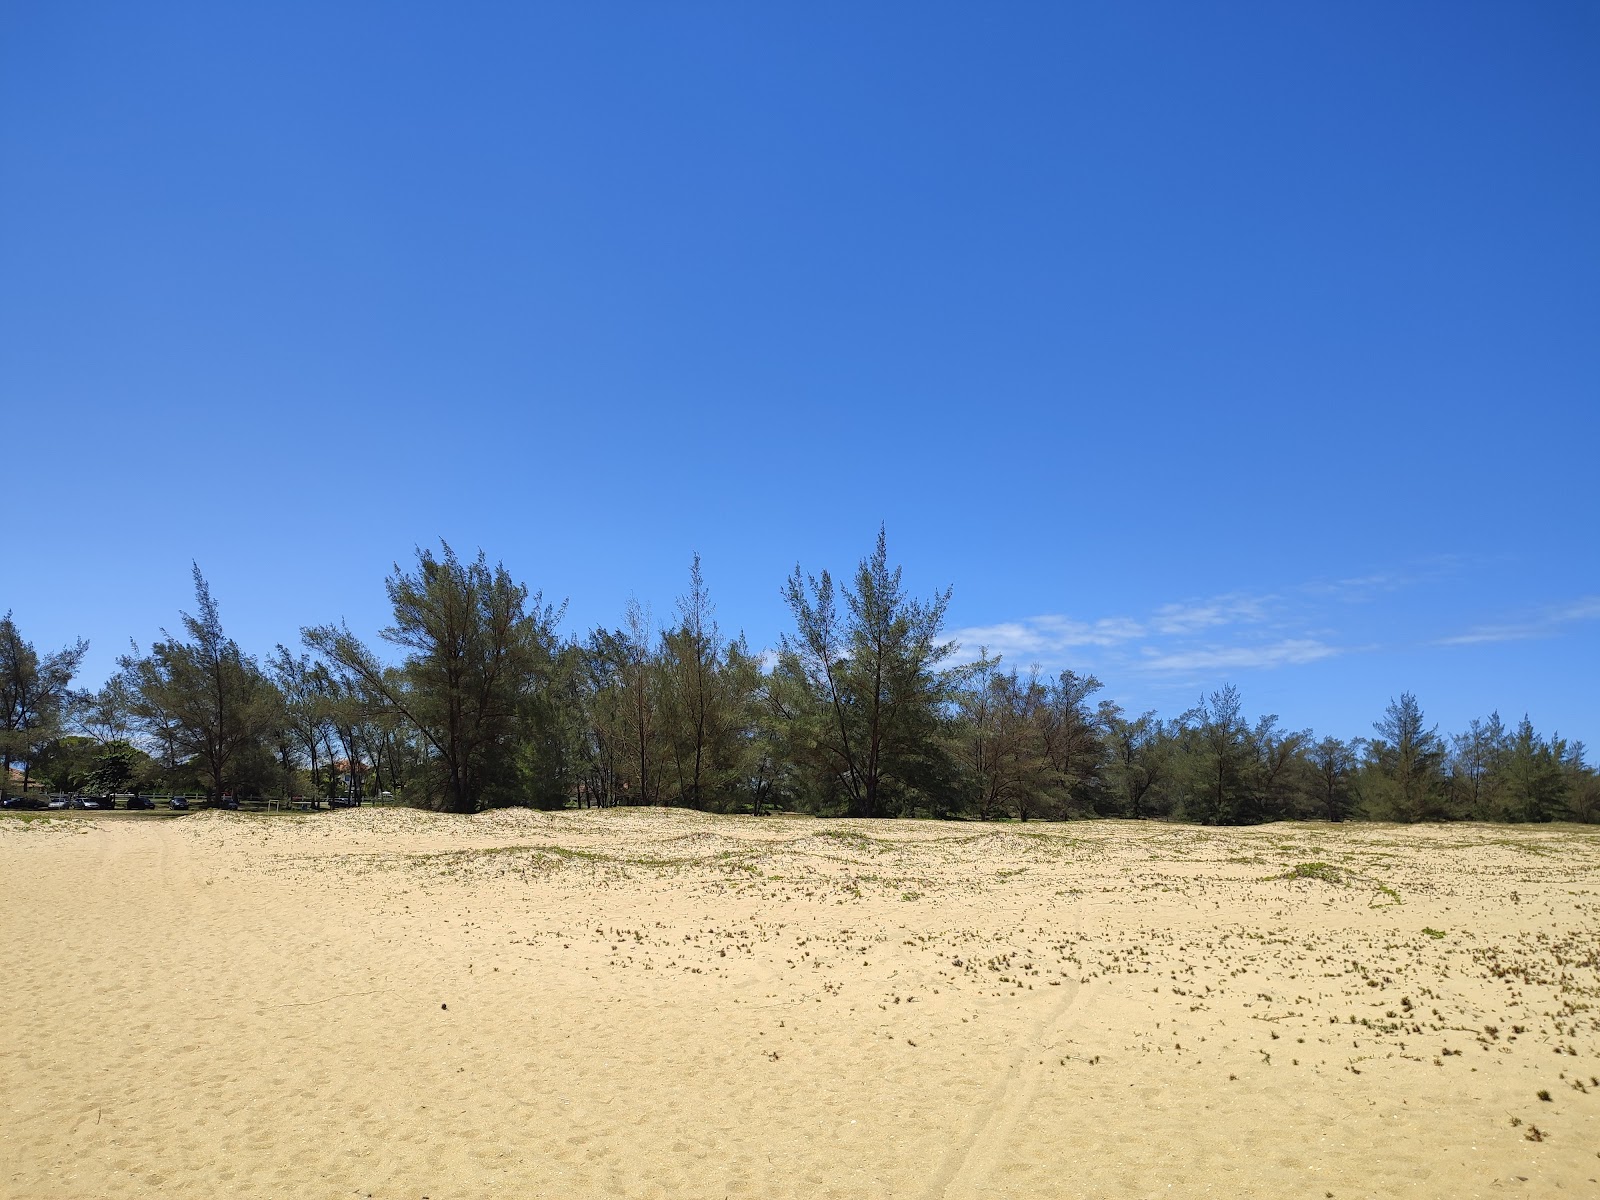 Fotografie cu Plaja Xexe cu o suprafață de nisip strălucitor